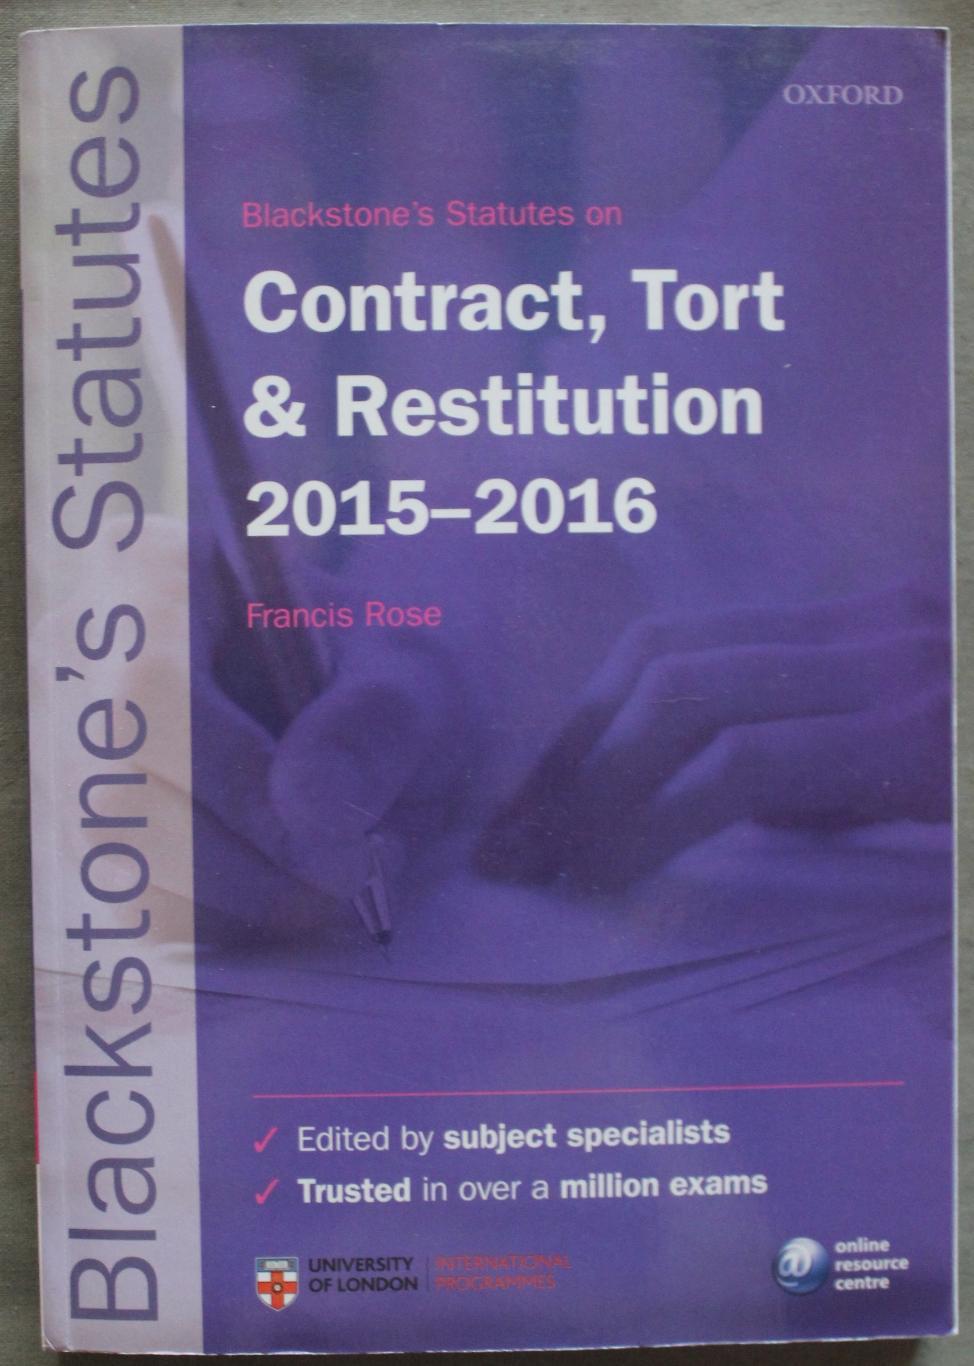 Статуты Блэкстоуна о контрактах, правонарушениях и реституции 2015-16 на англ.